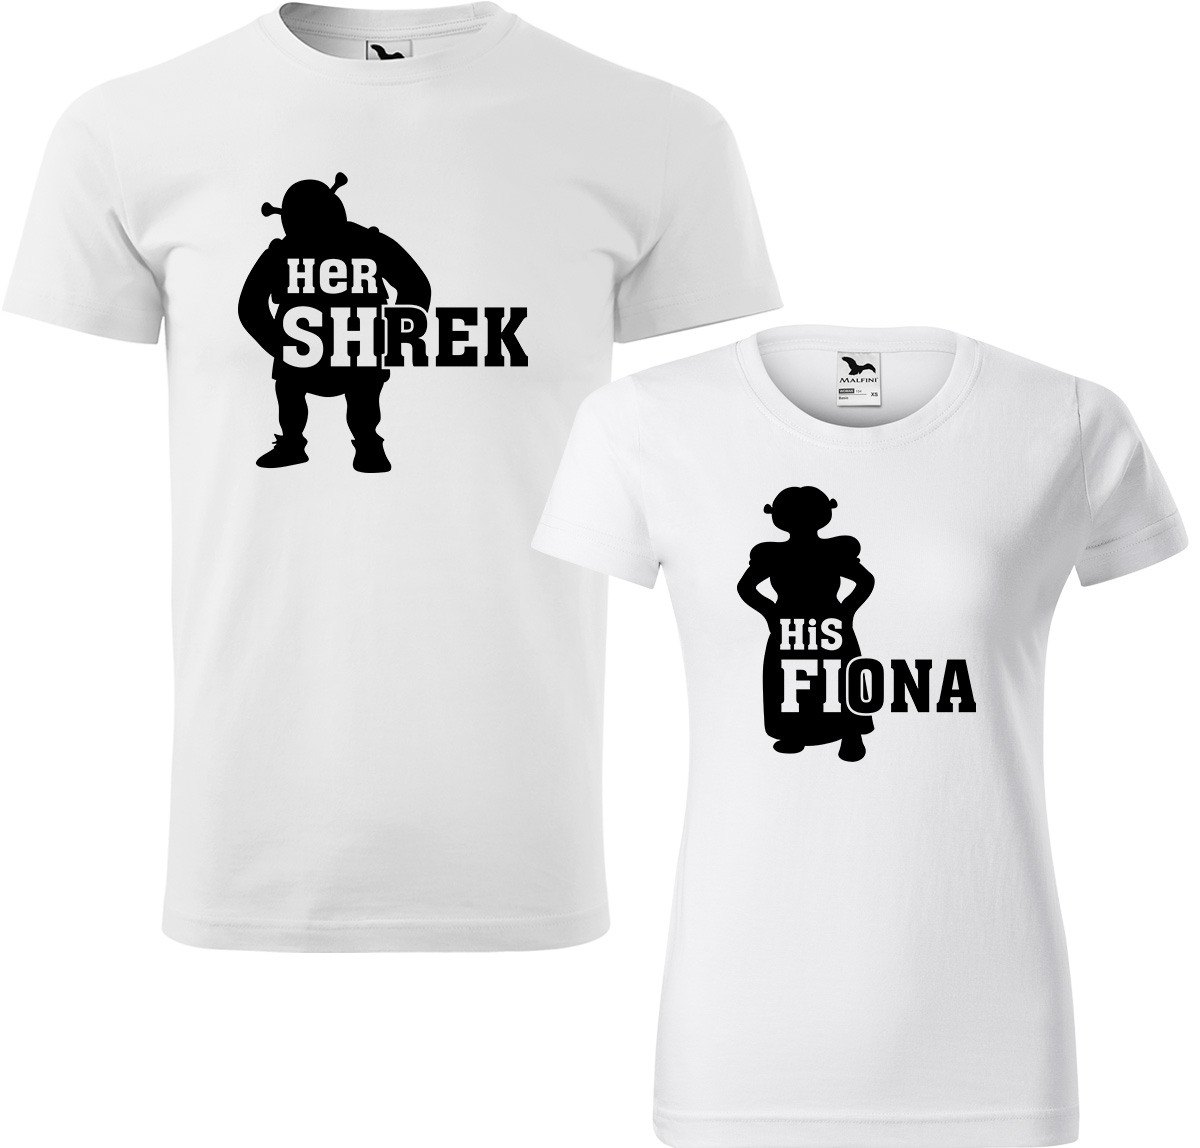 Trička pro páry - Shrek a Fiona Barva: Bílá (00), Velikost dámské tričko: S, Velikost pánské tričko: M